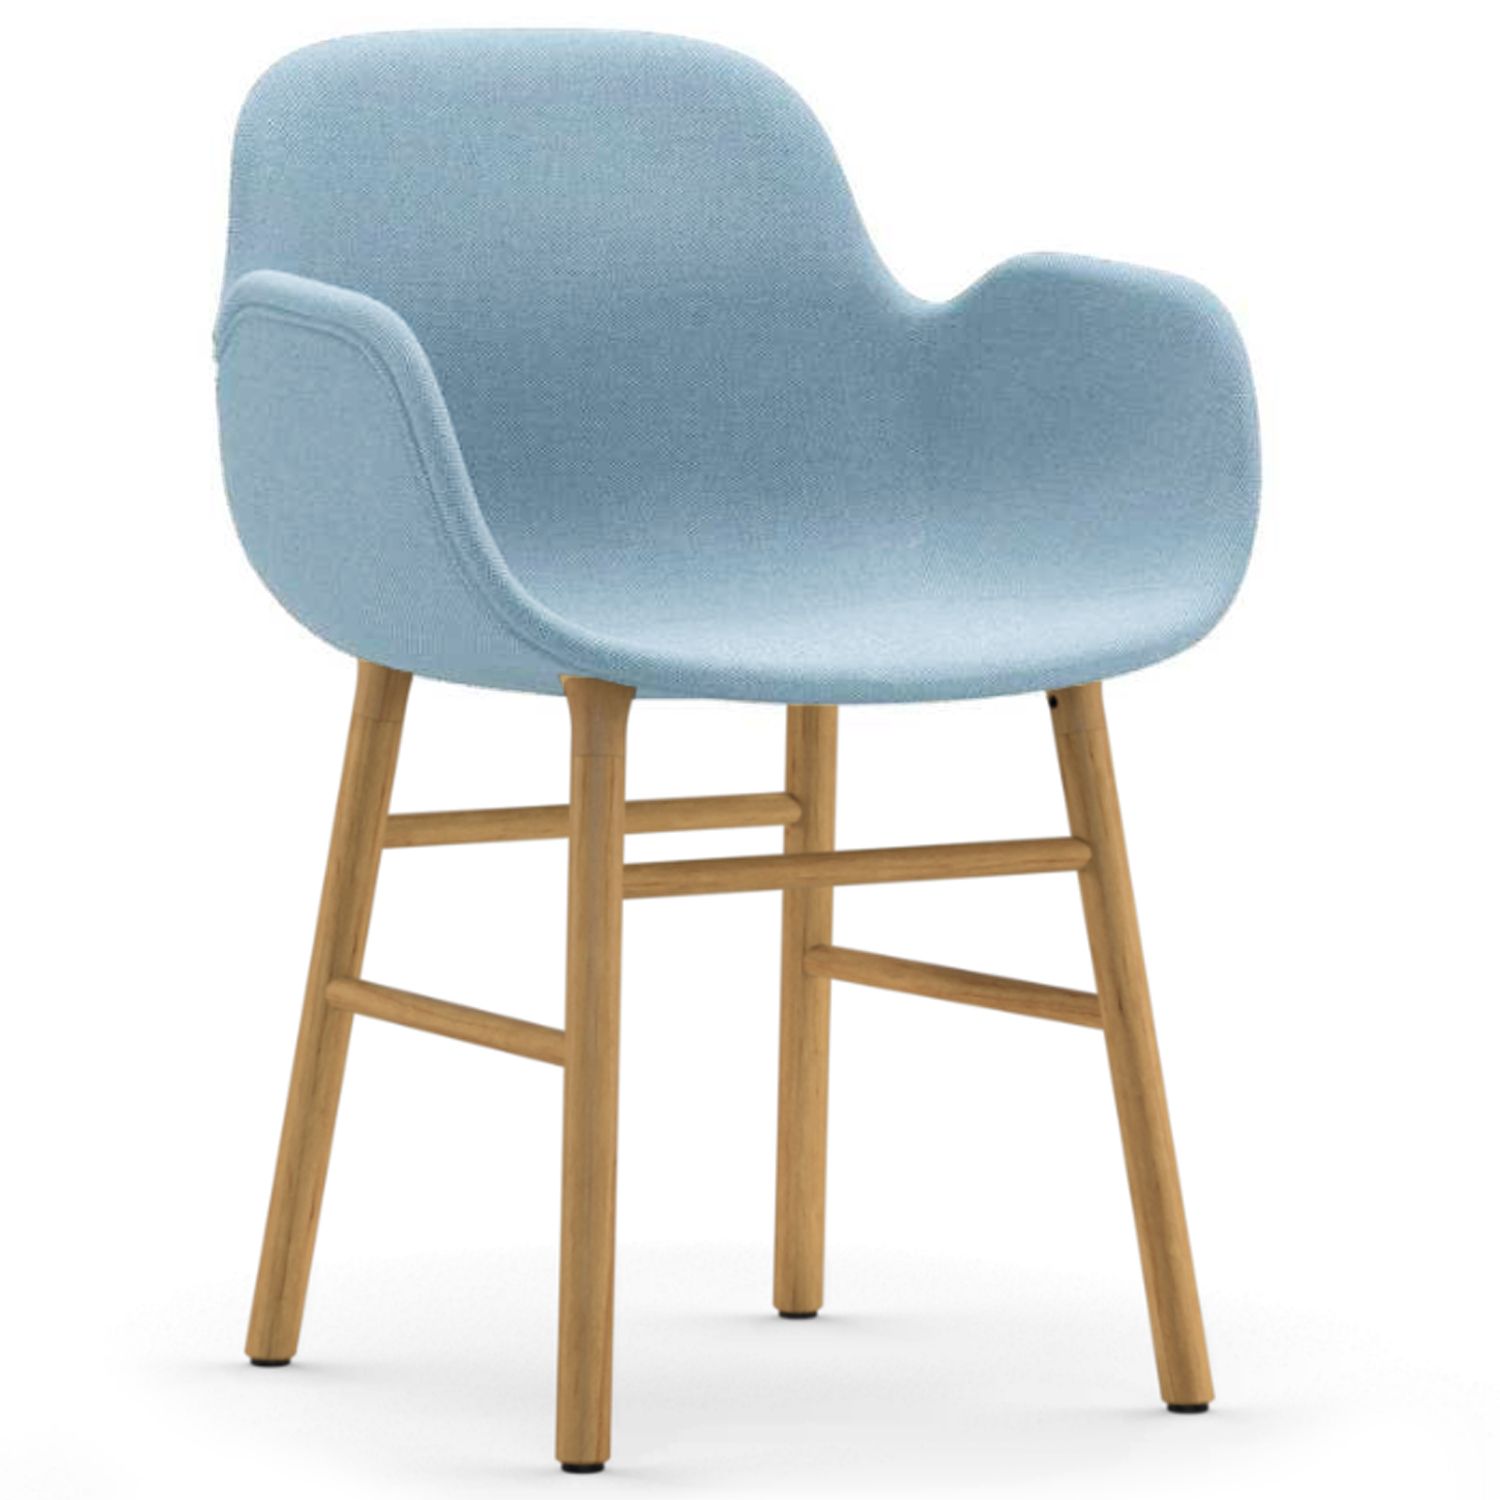 Výprodej Normann Copenhagen designové židle Form Armchair Wood (polstrování světle modrá, dub) - DESIGNPROPAGANDA